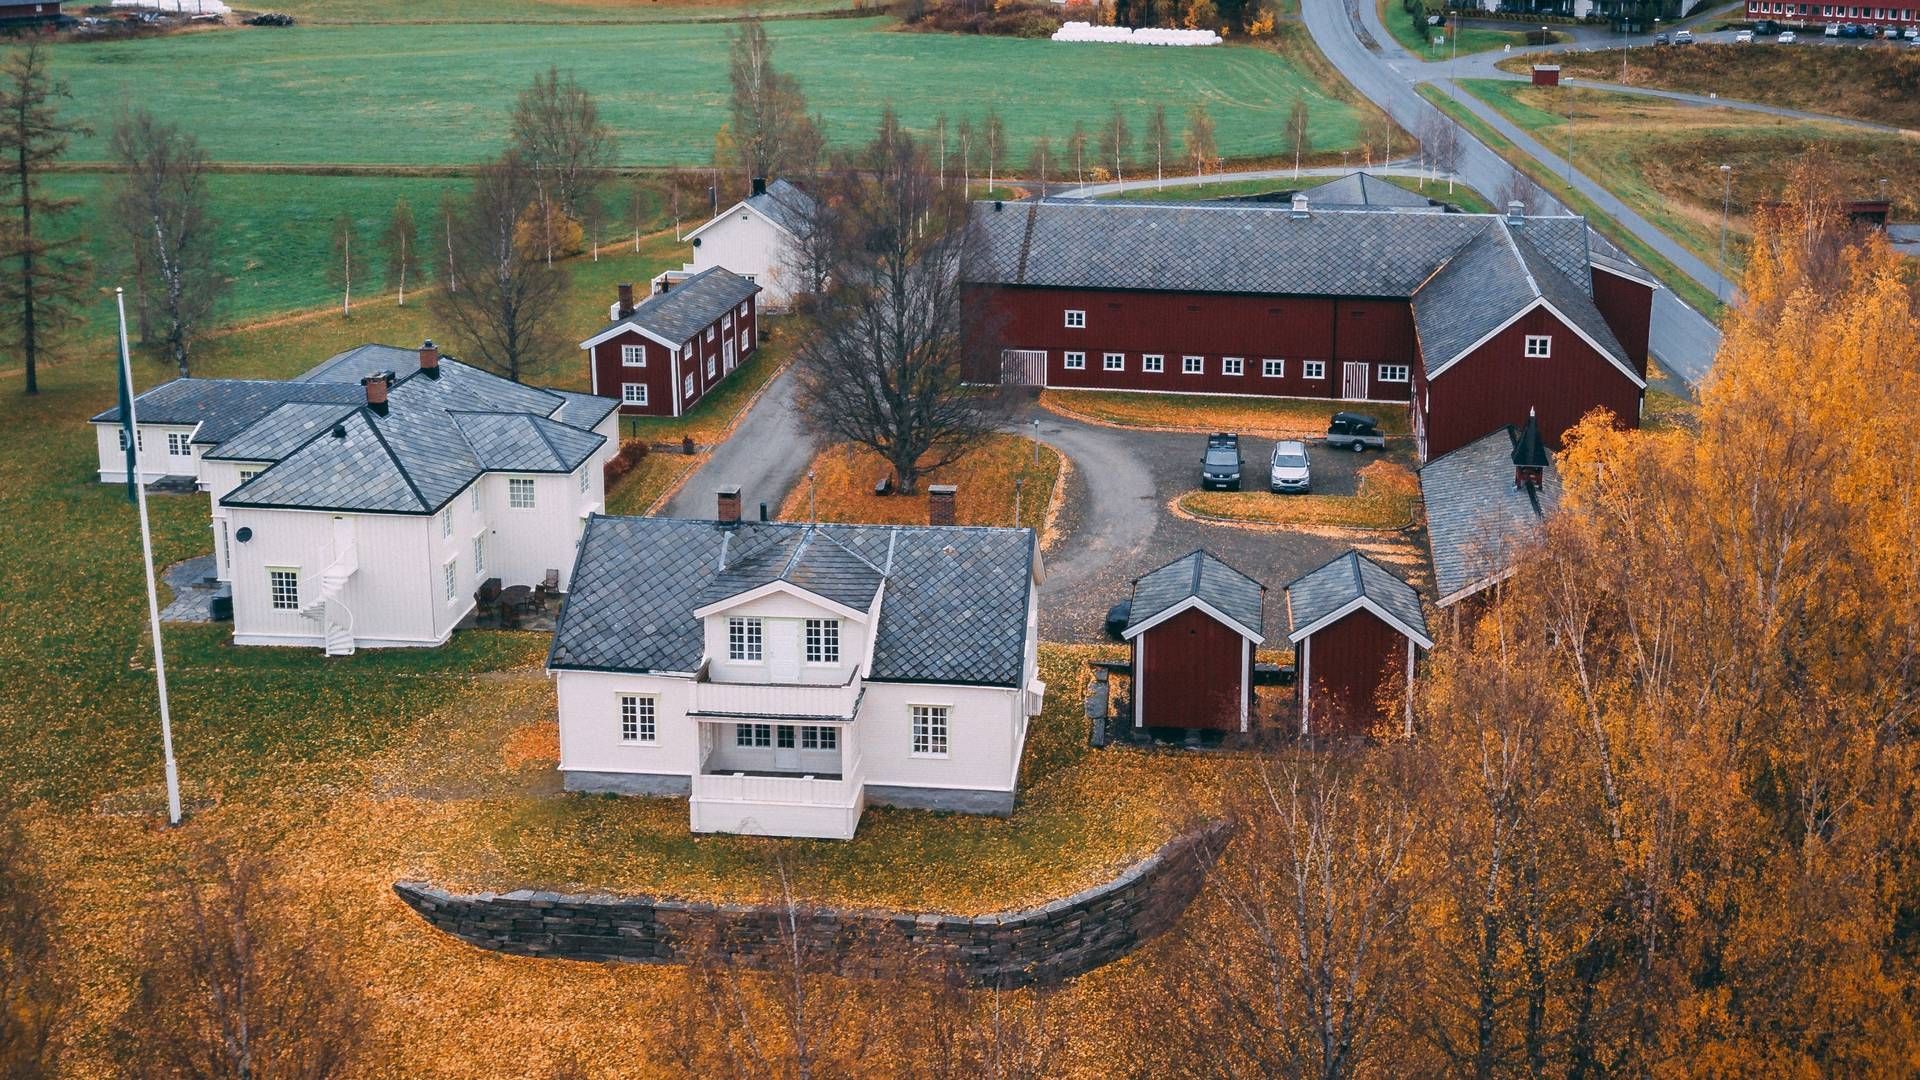 STORARTET: Meraker Brug har ifølge DN en markedsverdi på over 1,5 milliarder kroner og er en av Norges største privateide eiendommer. Nå melder NRK og Trønder-Avisa at den selges til staten. | Foto: Meraker Brug